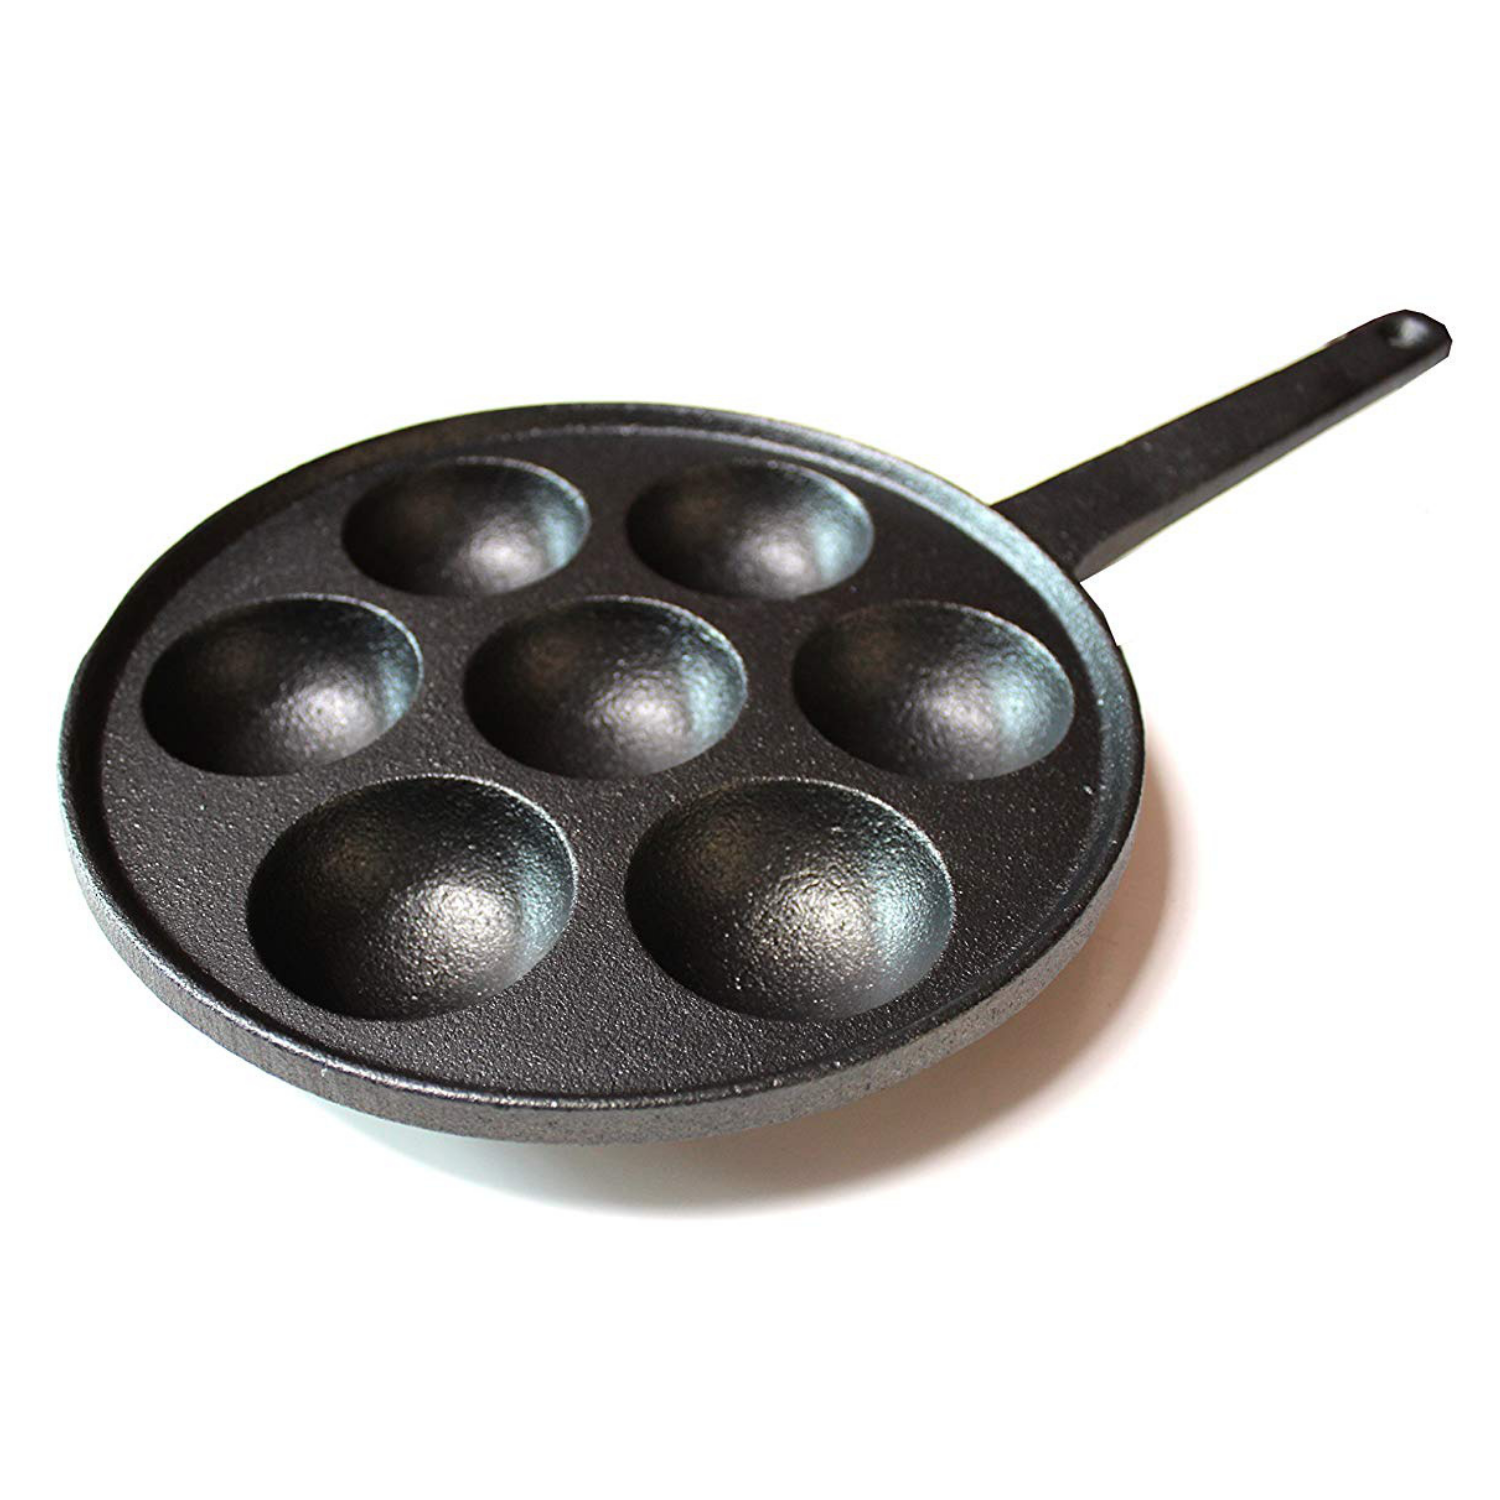 Polished Cast Iron Pancake Griddle